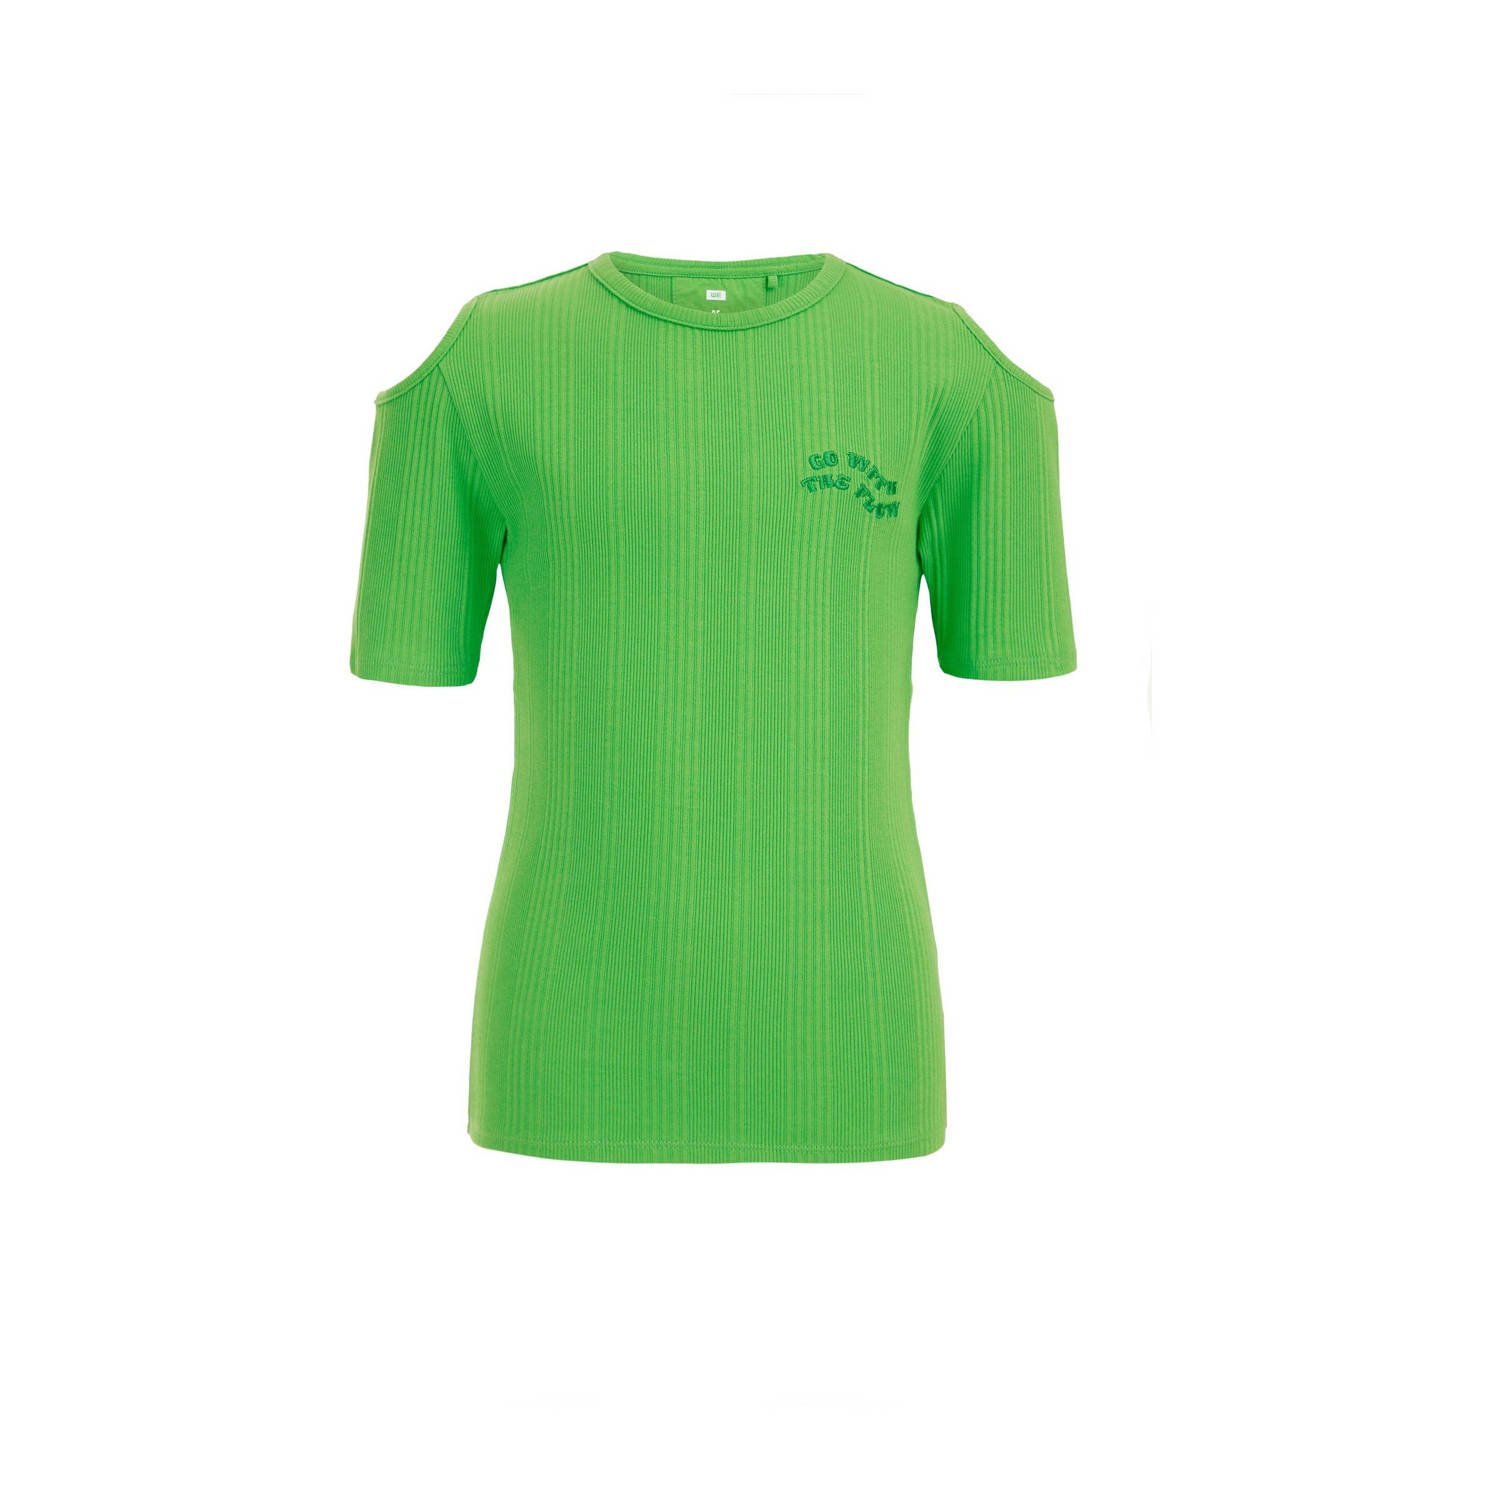 WE Fashion T-shirt groen Meisjes Stretchkatoen Ronde hals Effen 110 116